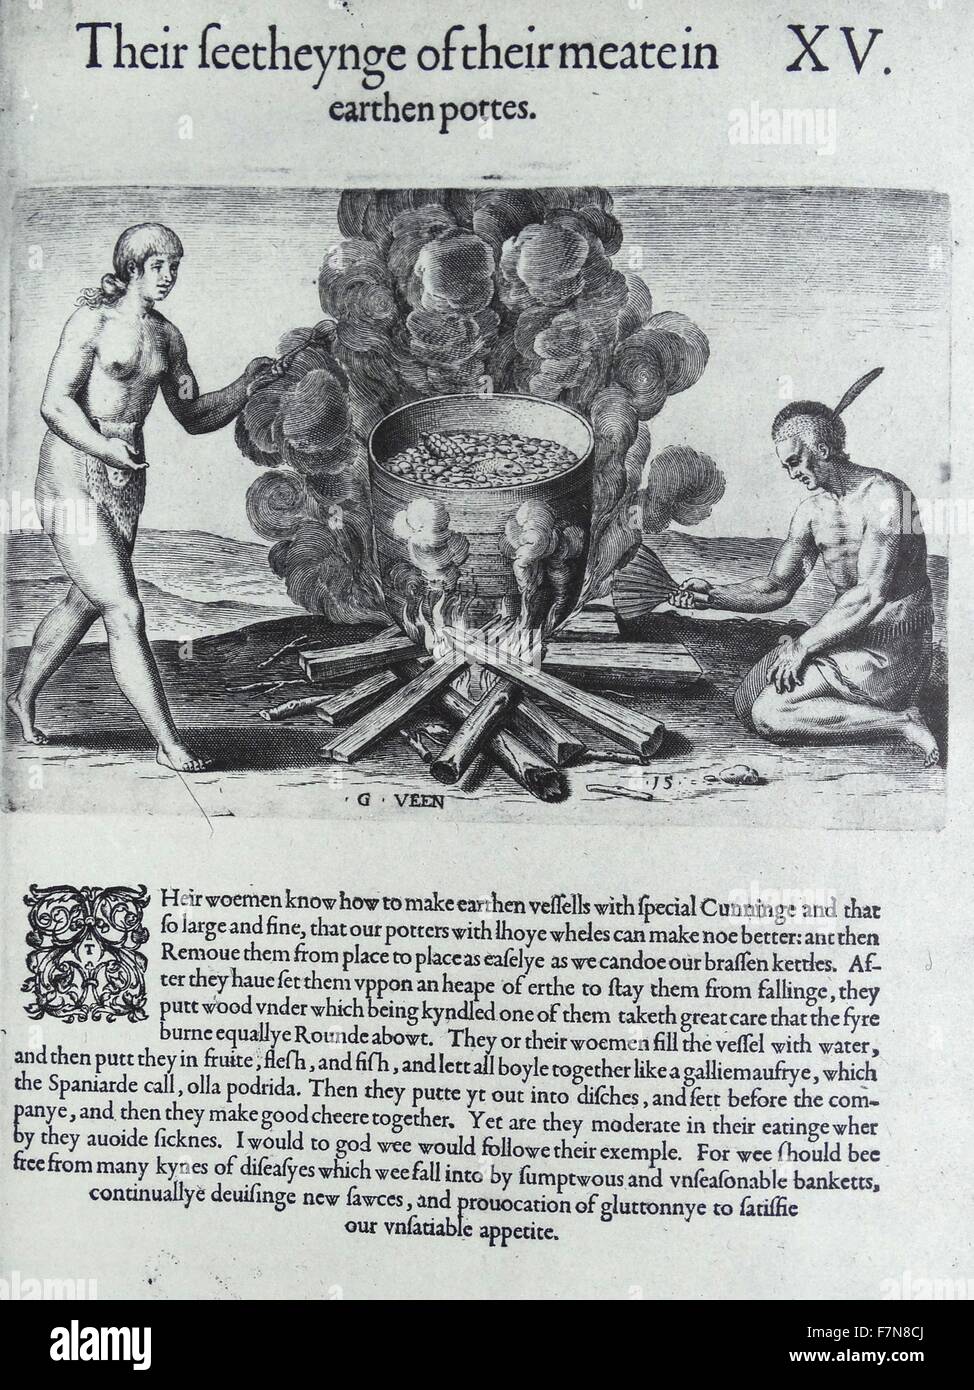 Abbildung der Indianer in einem irdenen Topf kochen. Vom 17. Jahrhundert Stockfoto